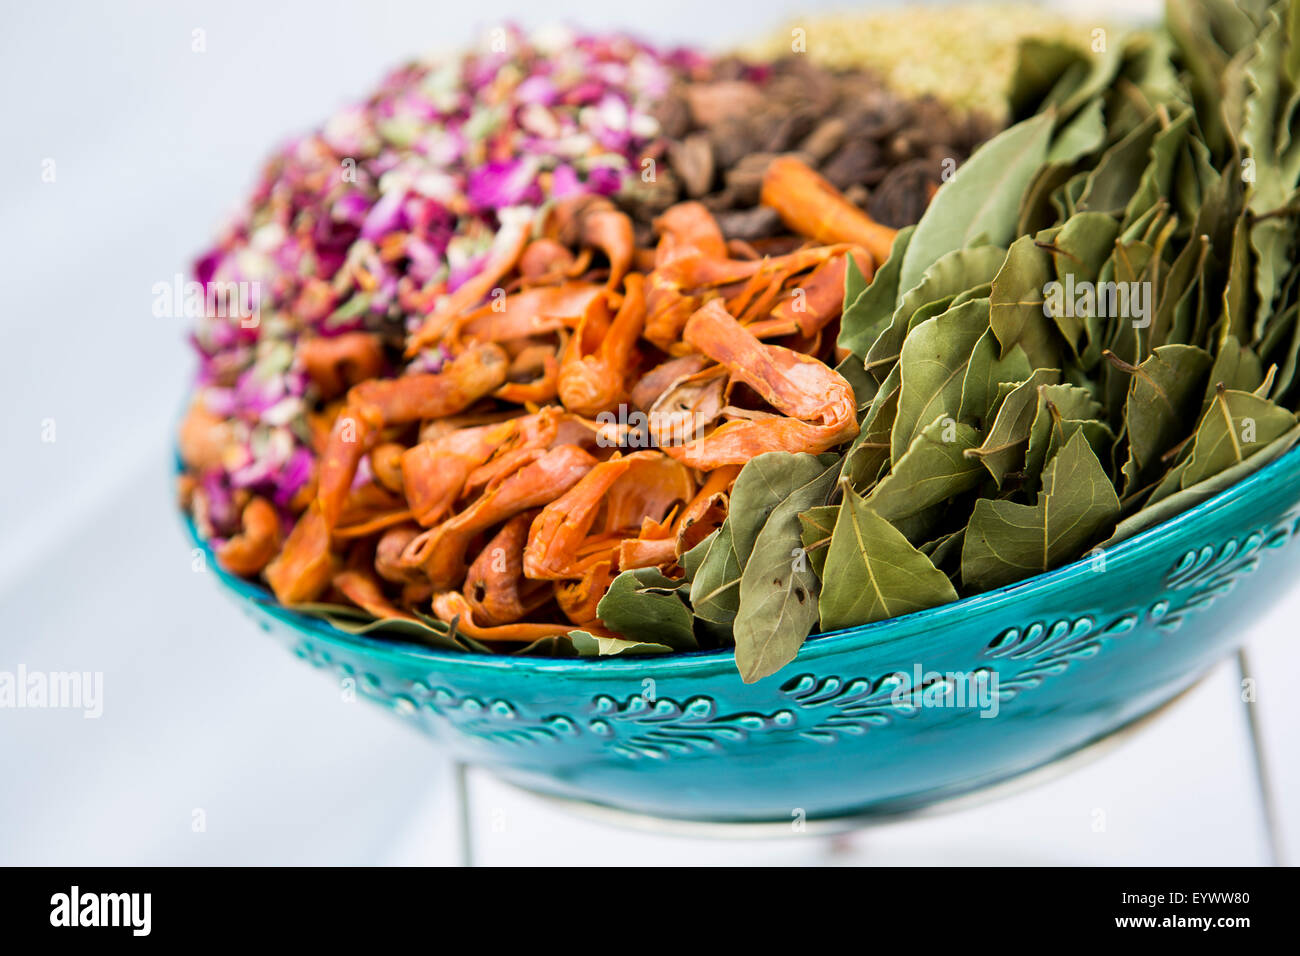 Una ciotola di spezie ed erbe aromatiche utilizzate nella cucina indiana tra cui la foglia di alloro, macis petali di rosa e nero cardamomo. Foto Stock